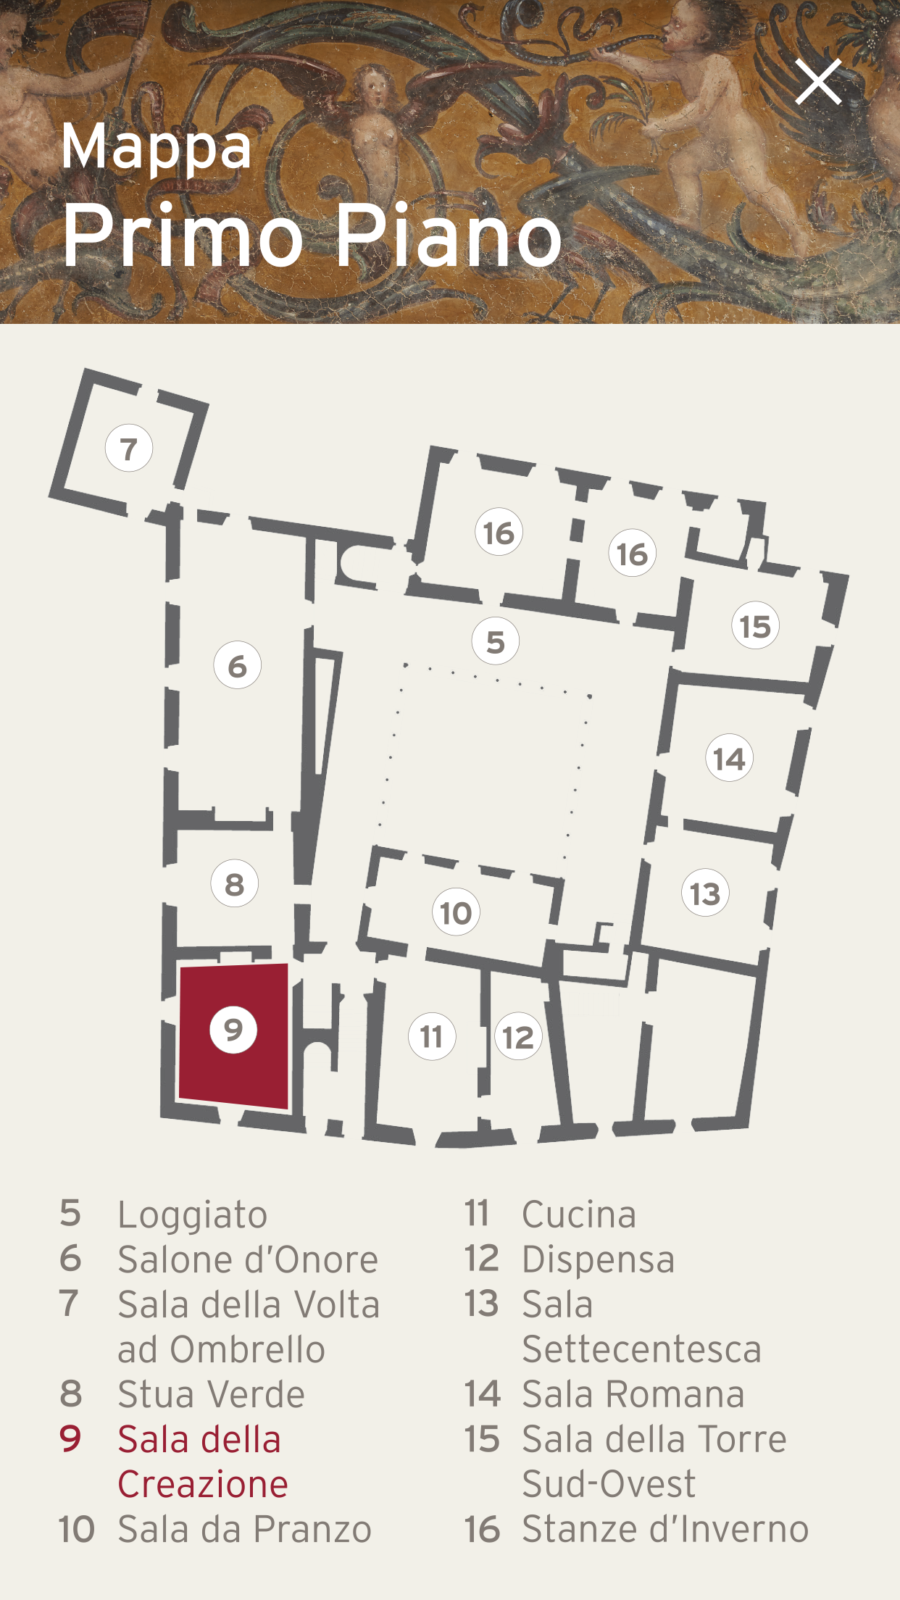 Screen dell'app mobile di Palazzo Besta, realizzata da ett, mappa del primo piano con descrizione e numerazione delle stanze